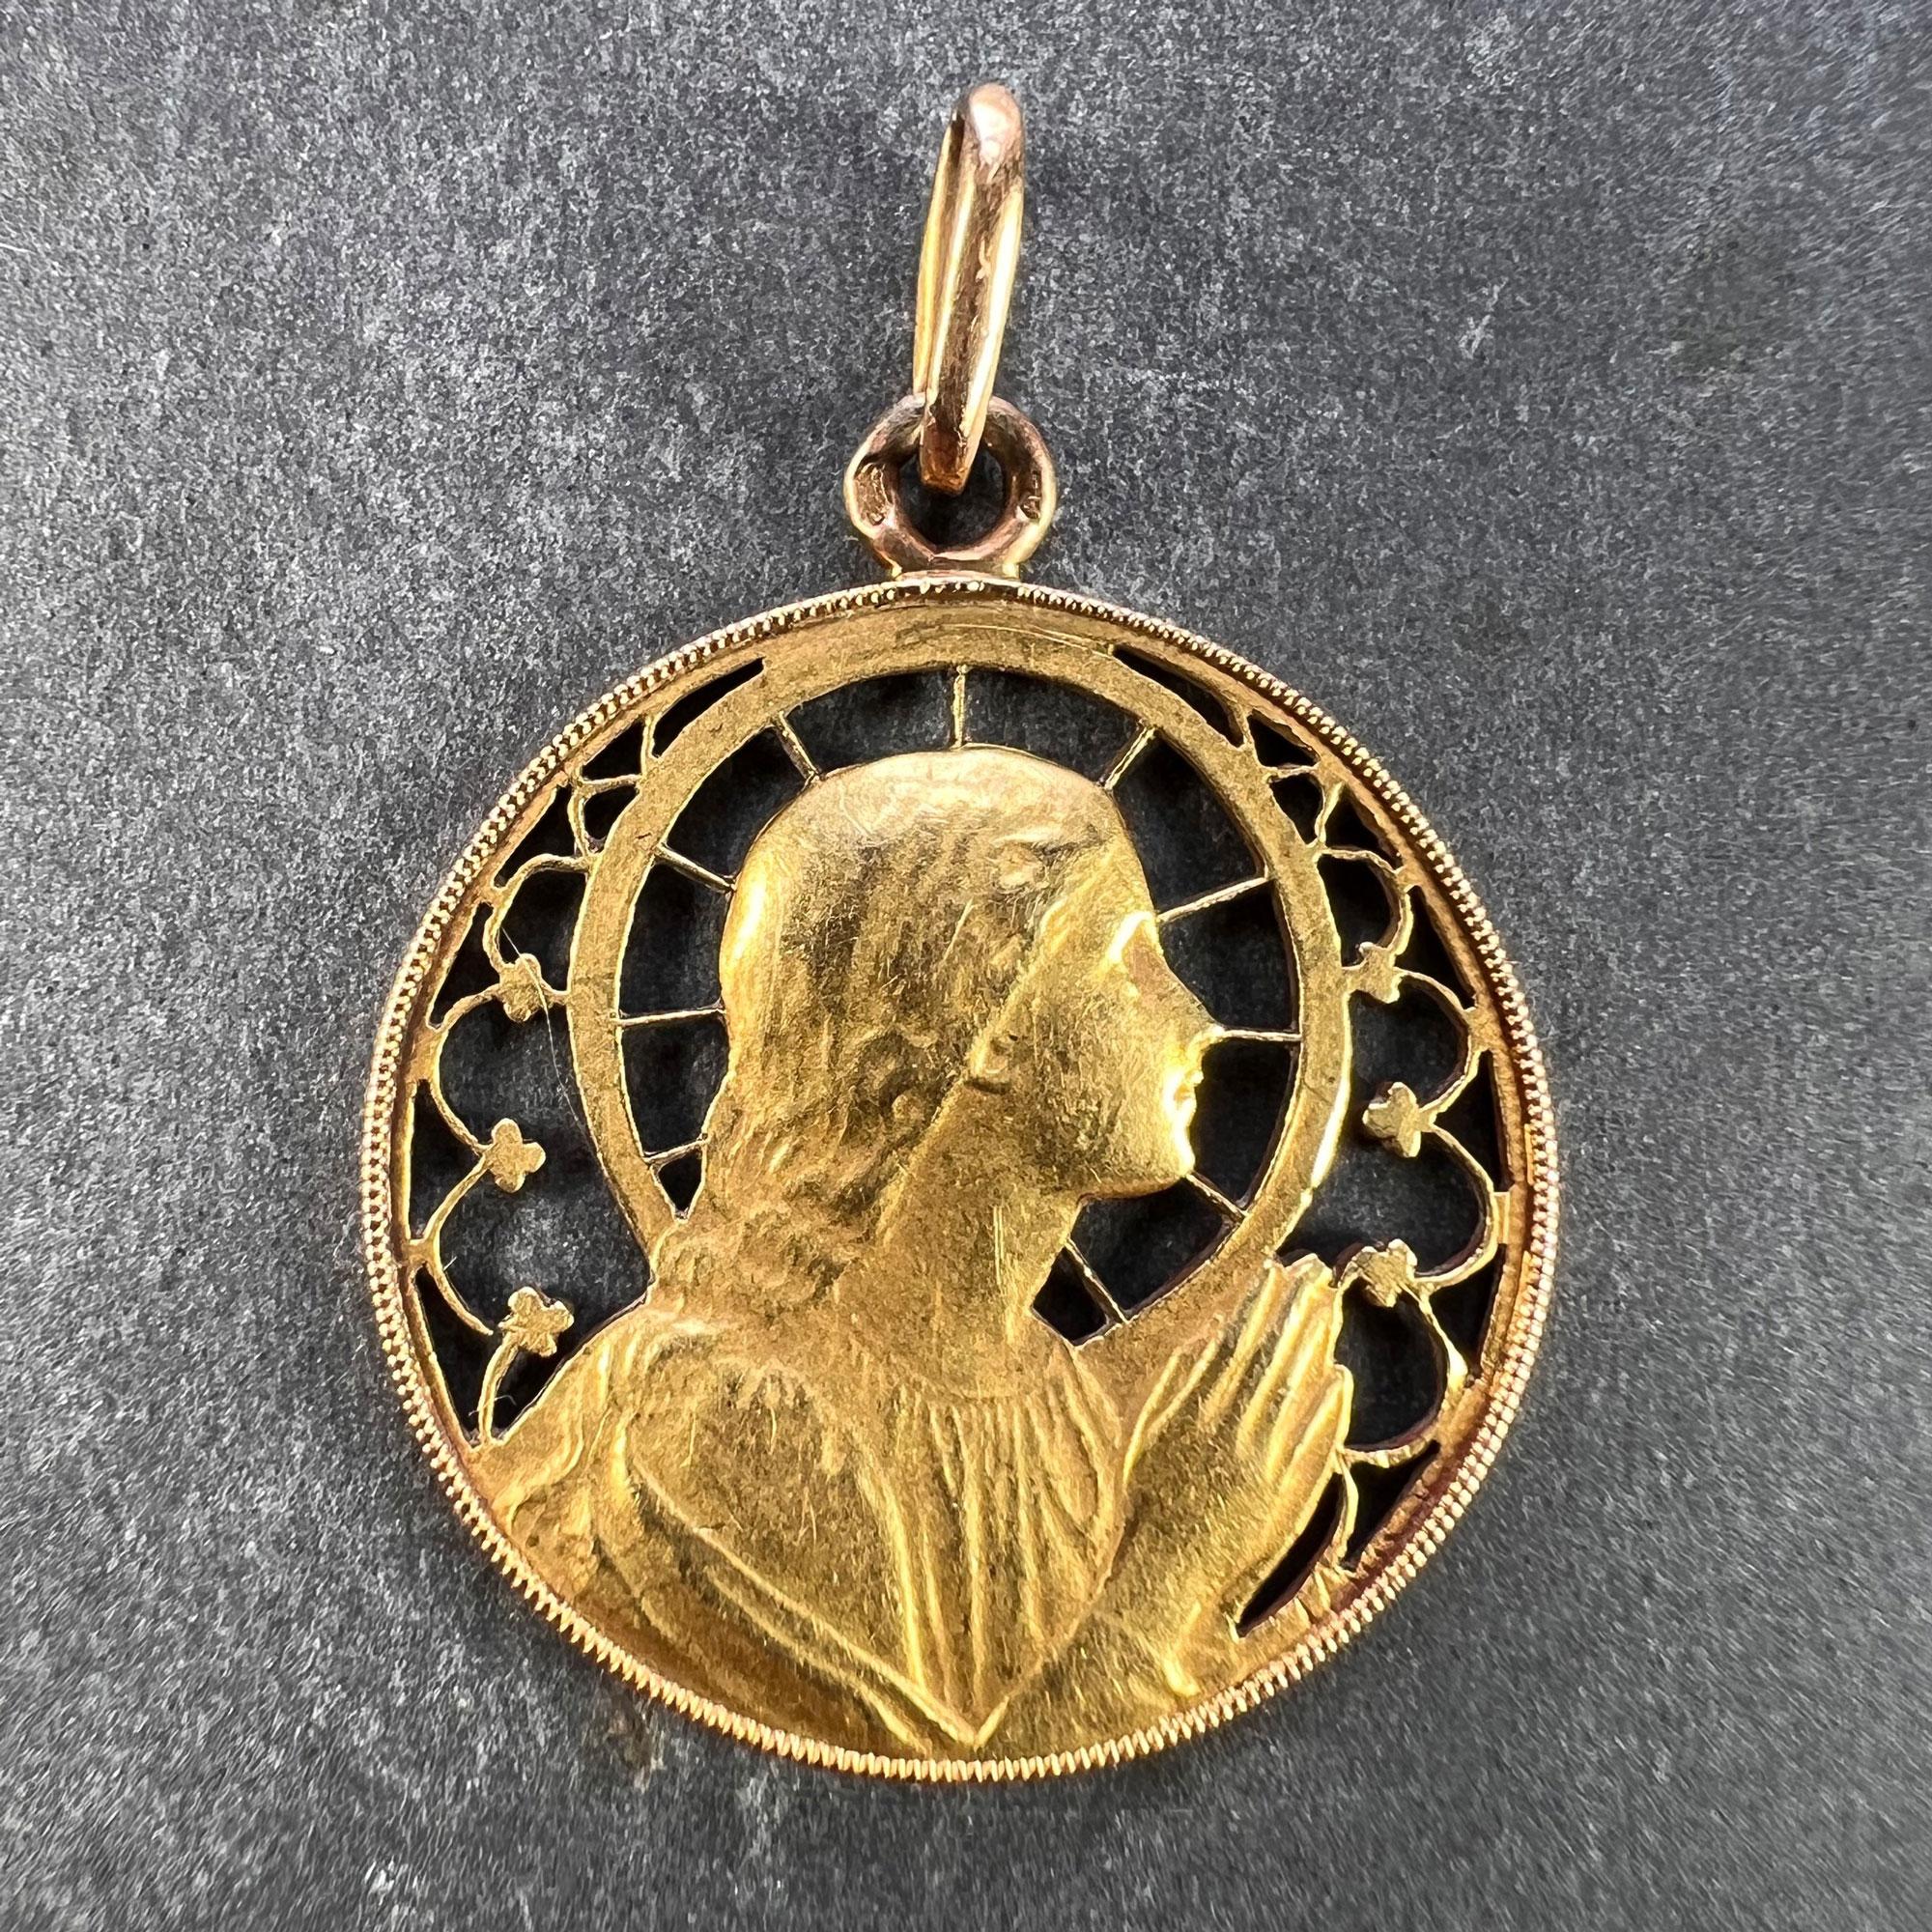 Pendentif à breloques français en or jaune 18 carats (18K) conçu comme une médaille ronde représentant la Vierge Marie dans un cadre ajouré conçu pour ressembler à une auréole et à un vitrail. Le revers est gravé AMR avec la date 